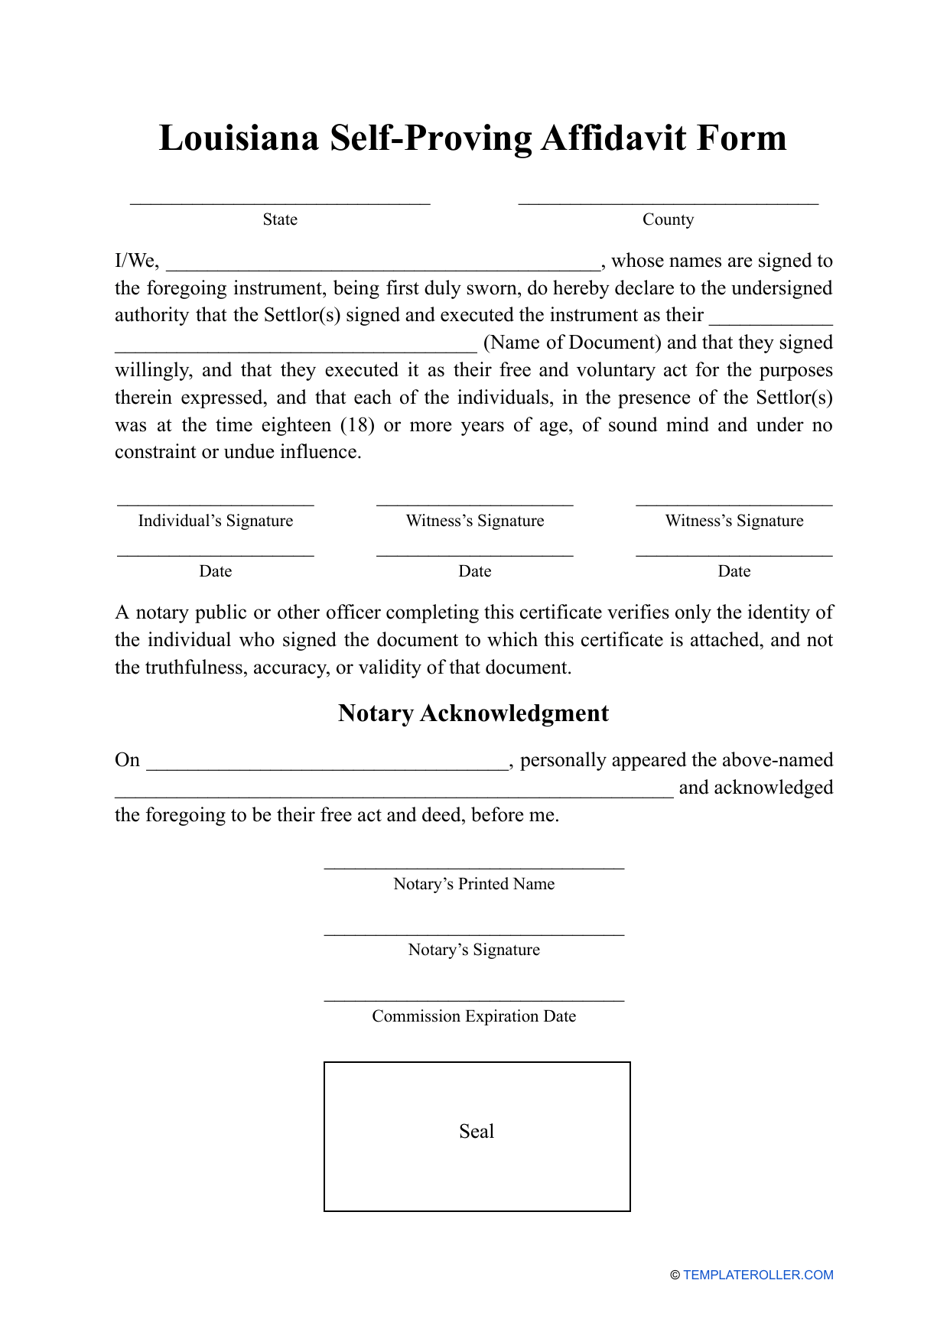 Self-proving Affidavit Form - Louisiana, Page 1